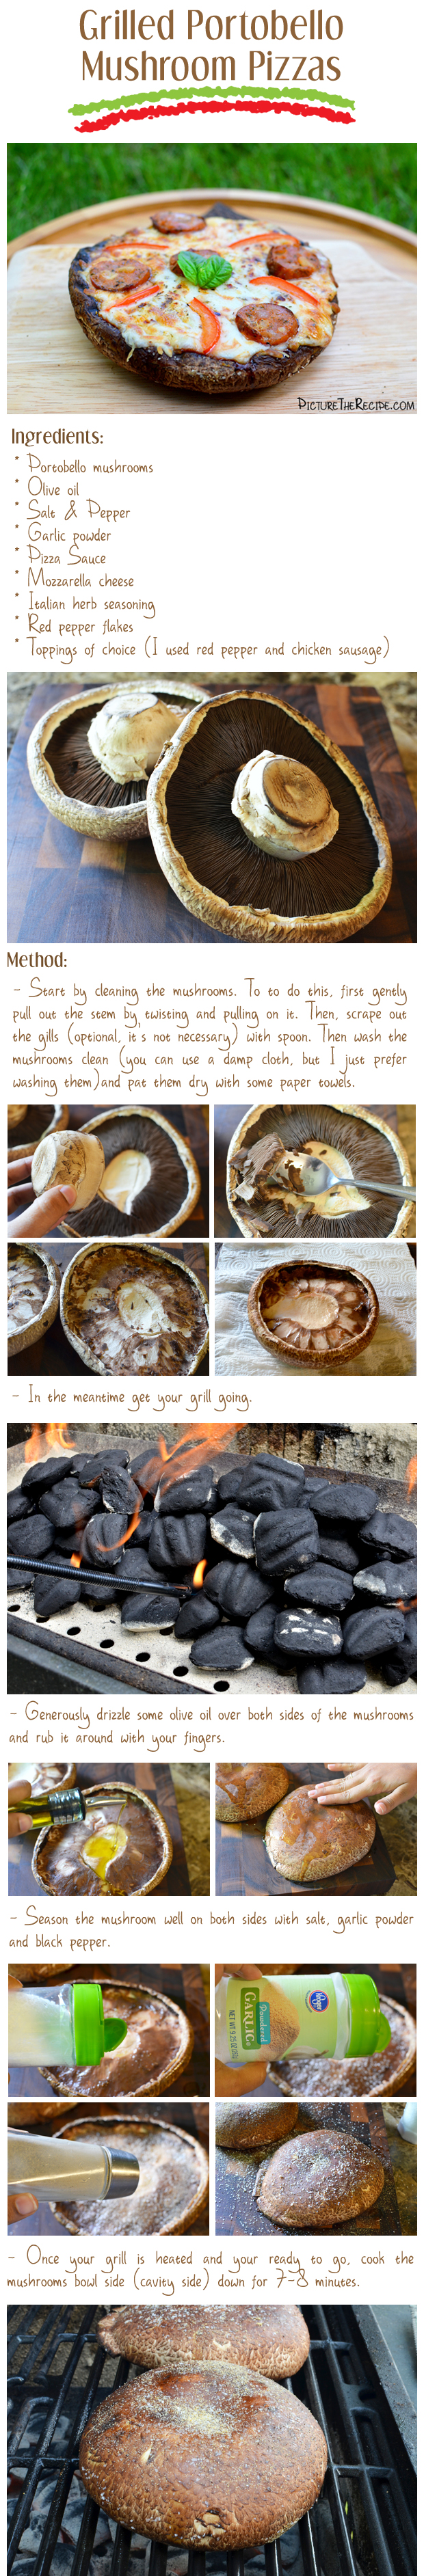 Grilled Portobello Mushroom Pizza Recipe- Part 1